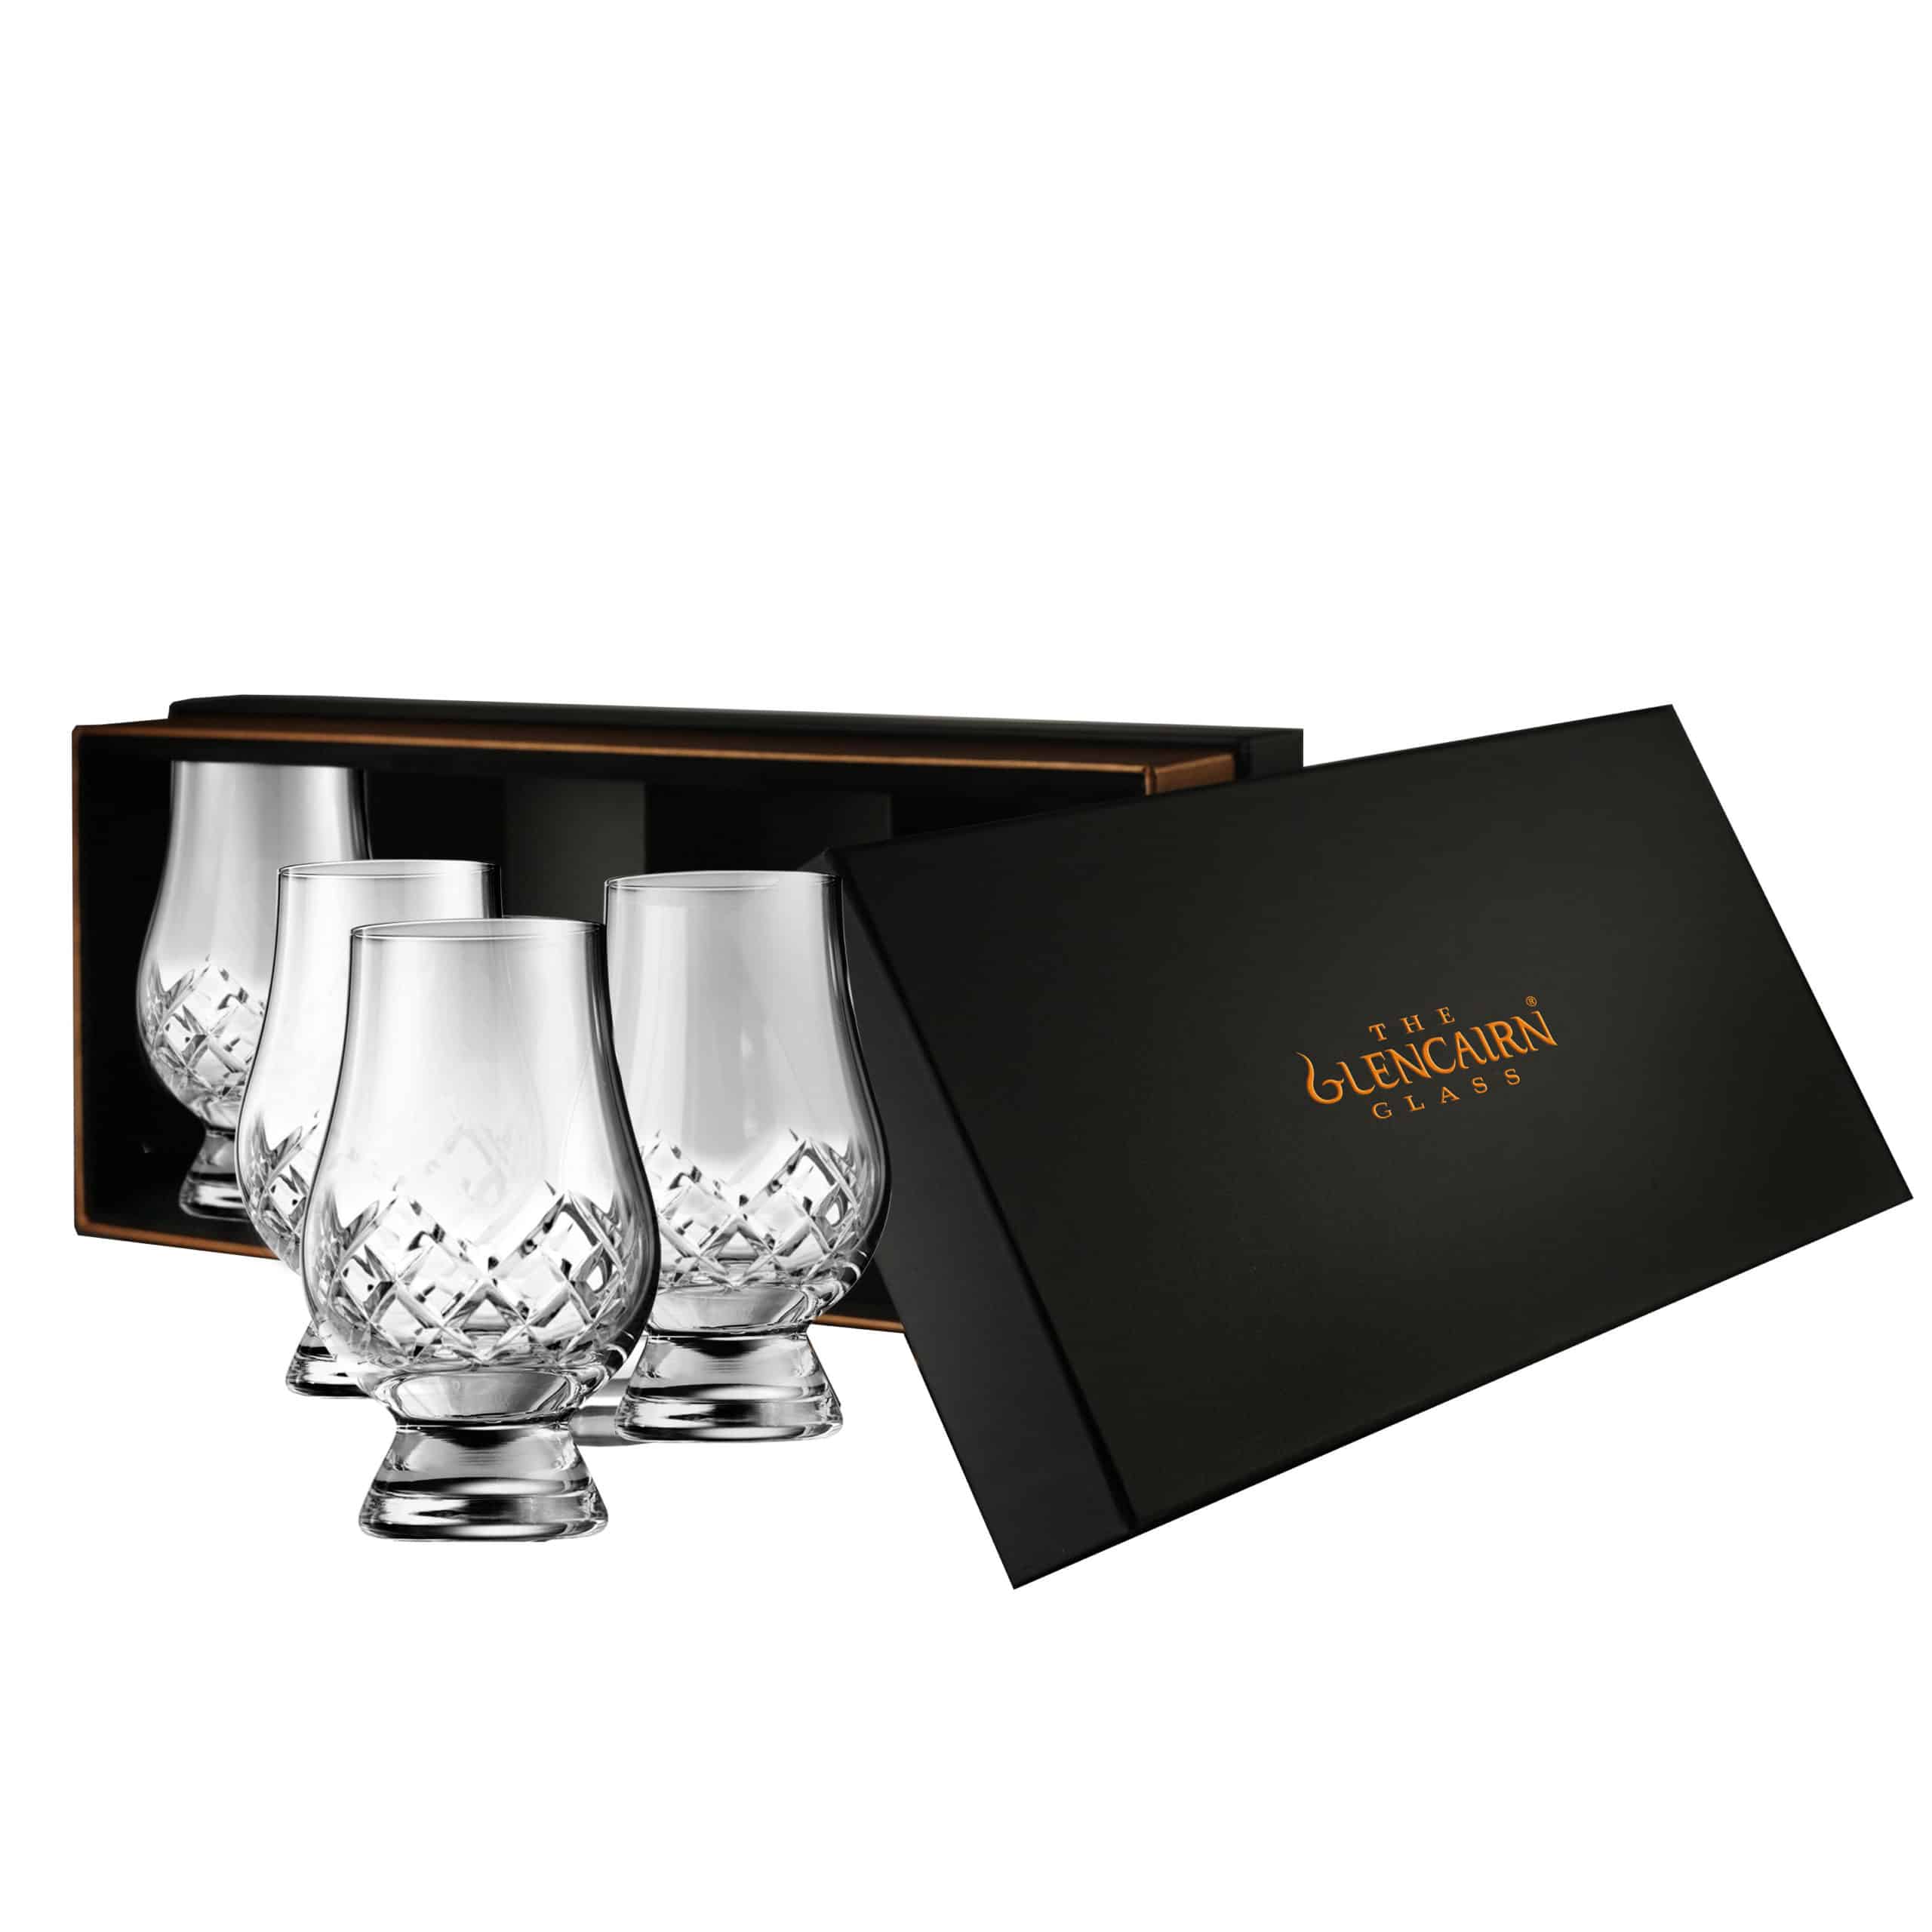 Cut Glencairn Glass | Crystal Whisky Glasses set of 4 | Glencairn Crystal